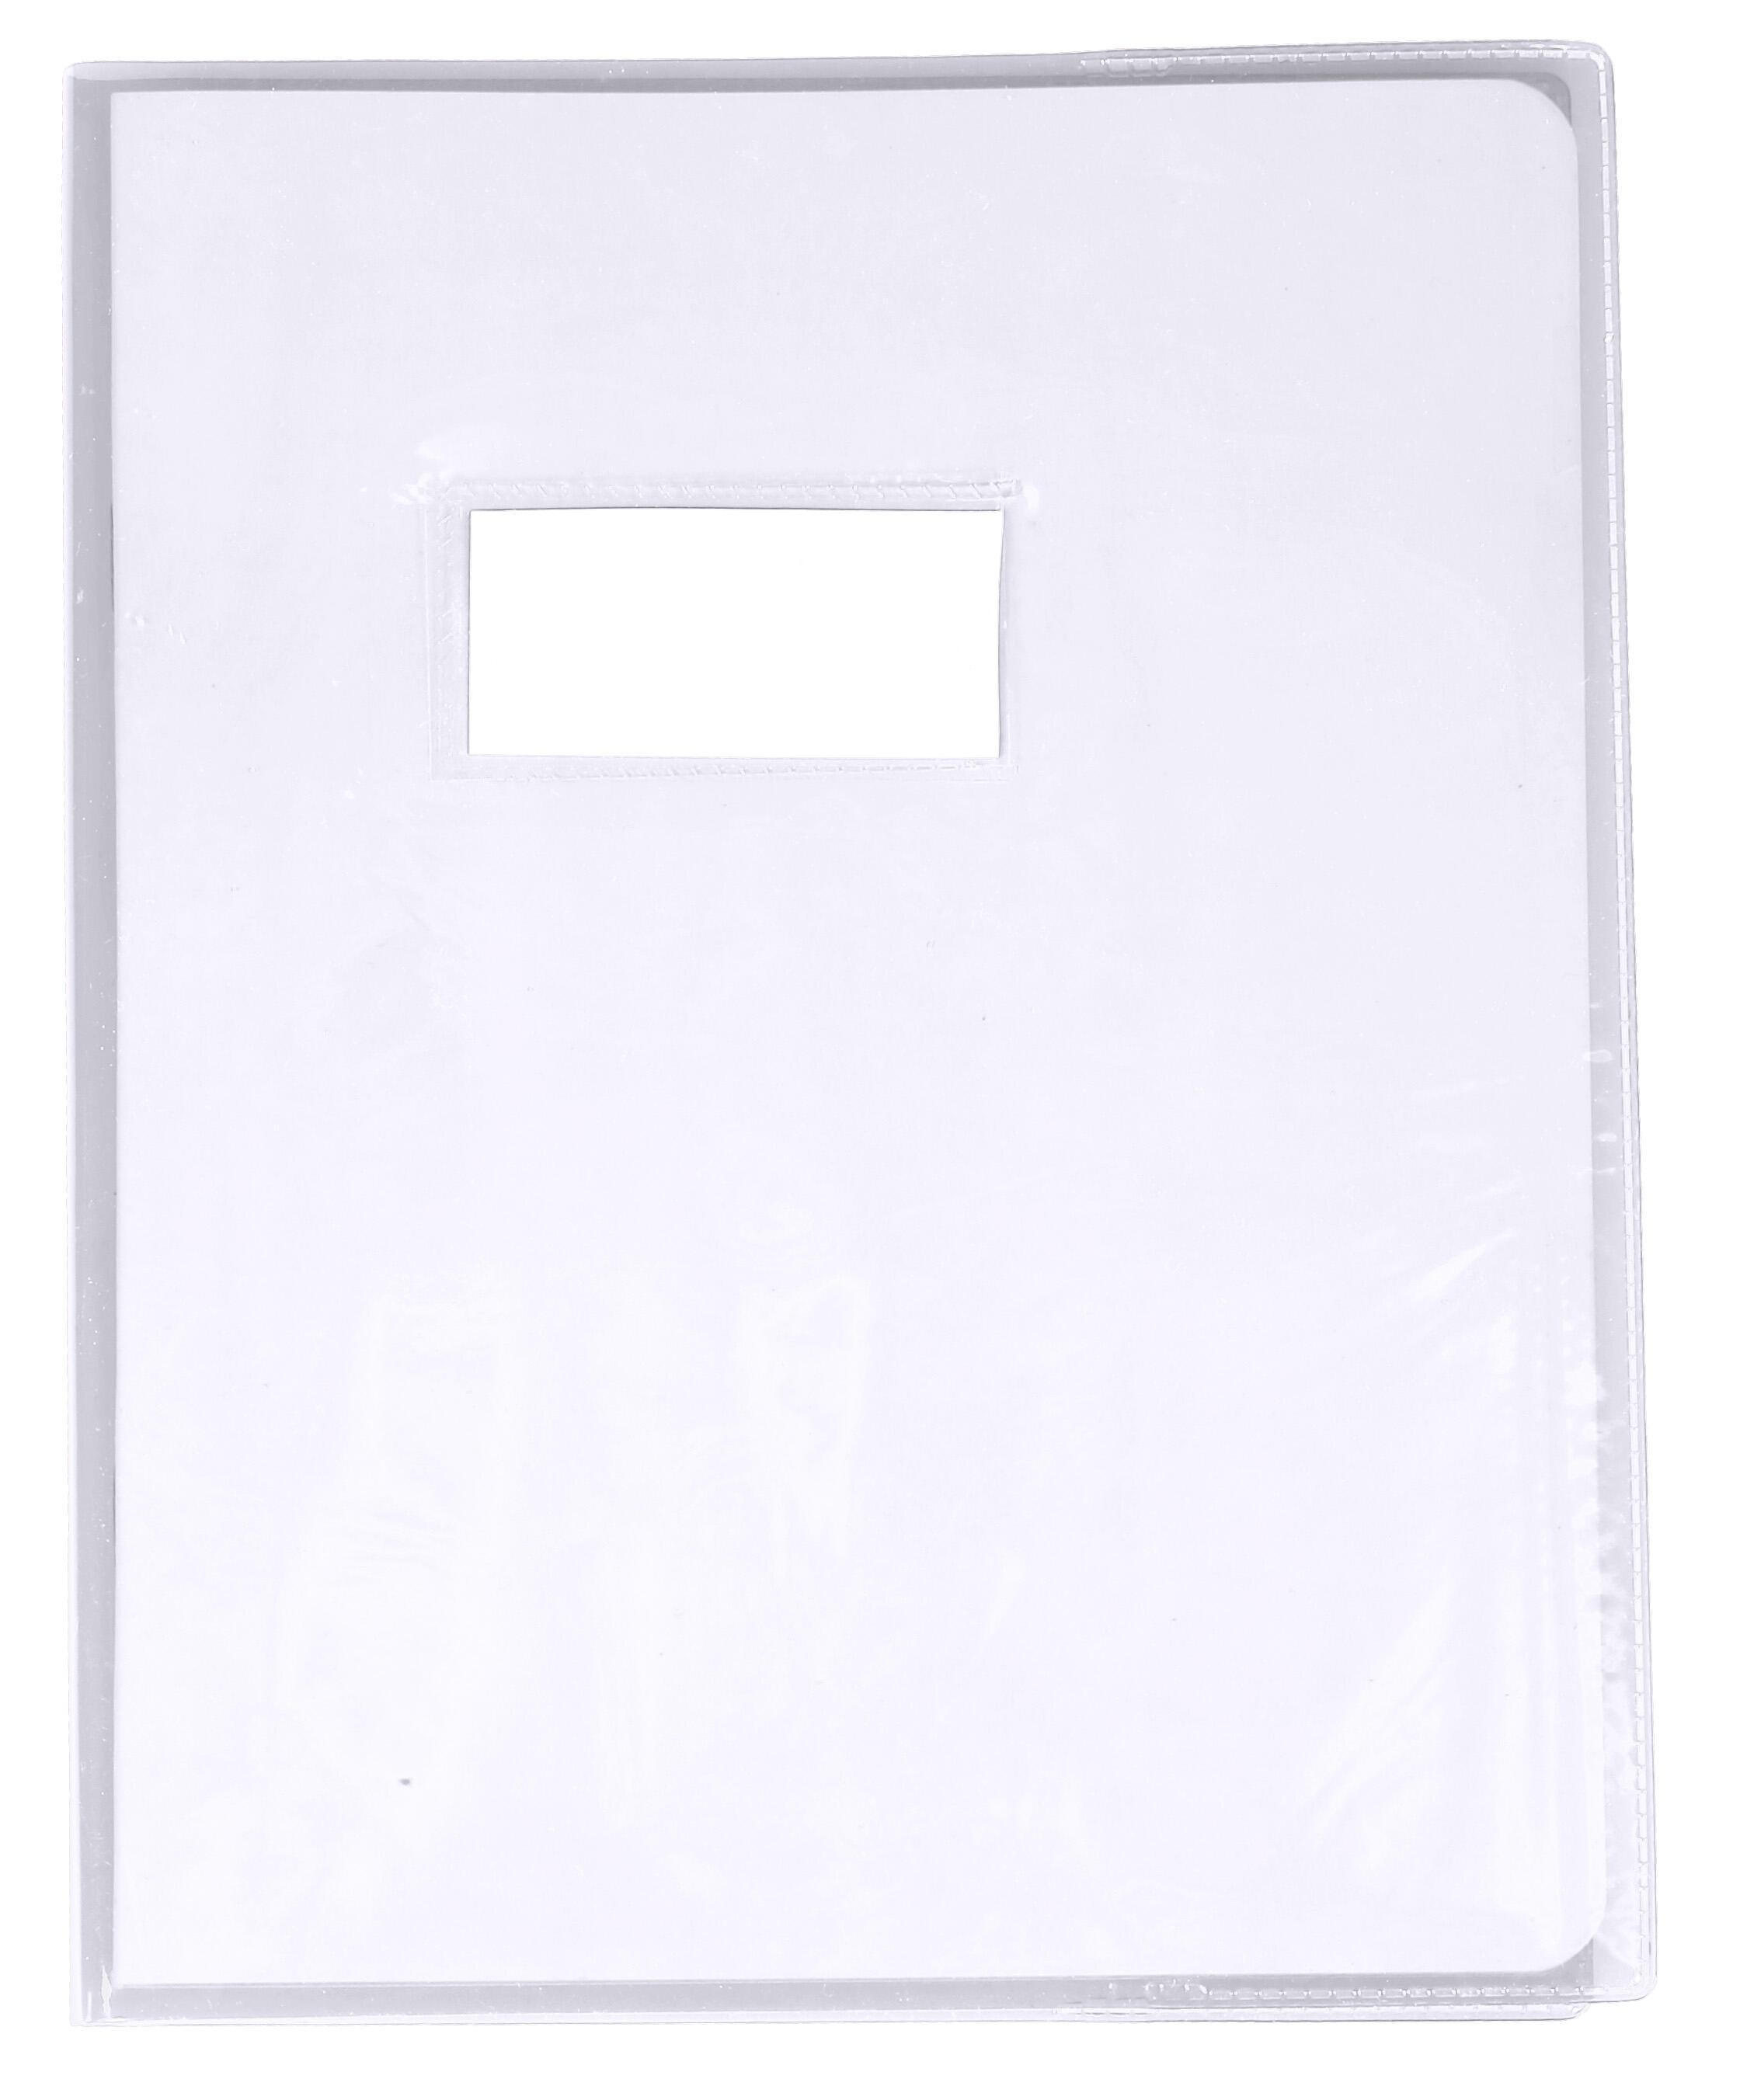 Protège-cahier PVC  - 2 rabats - 17x22- Incolore -Sans porte-étiquette